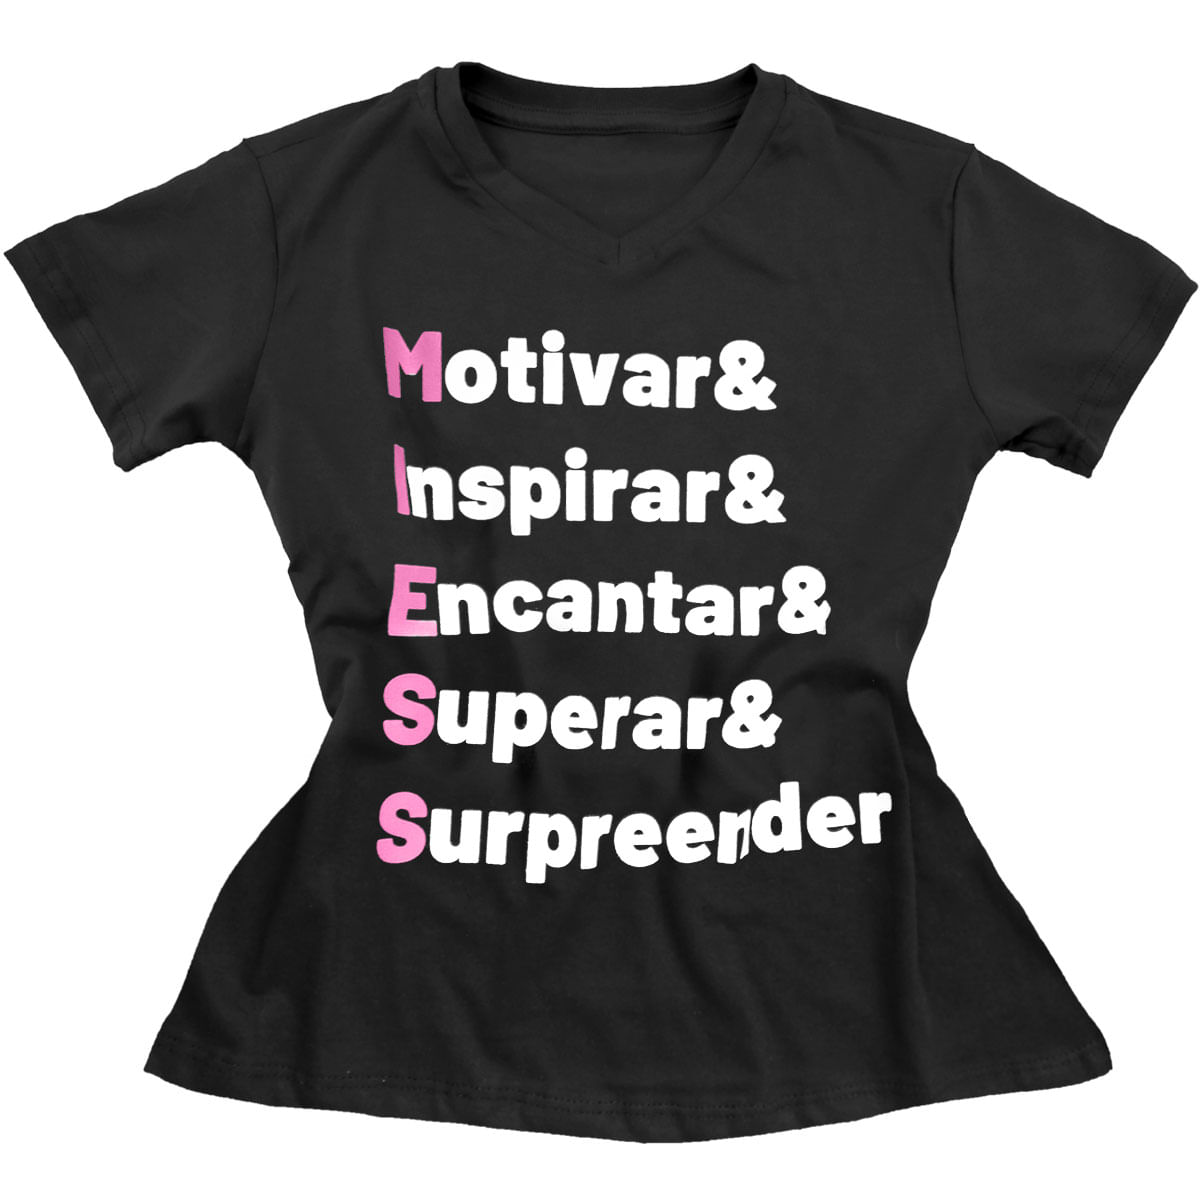 Camiseta Masculina Motivar Inspirar Encantar Superar & Surpreender Miess